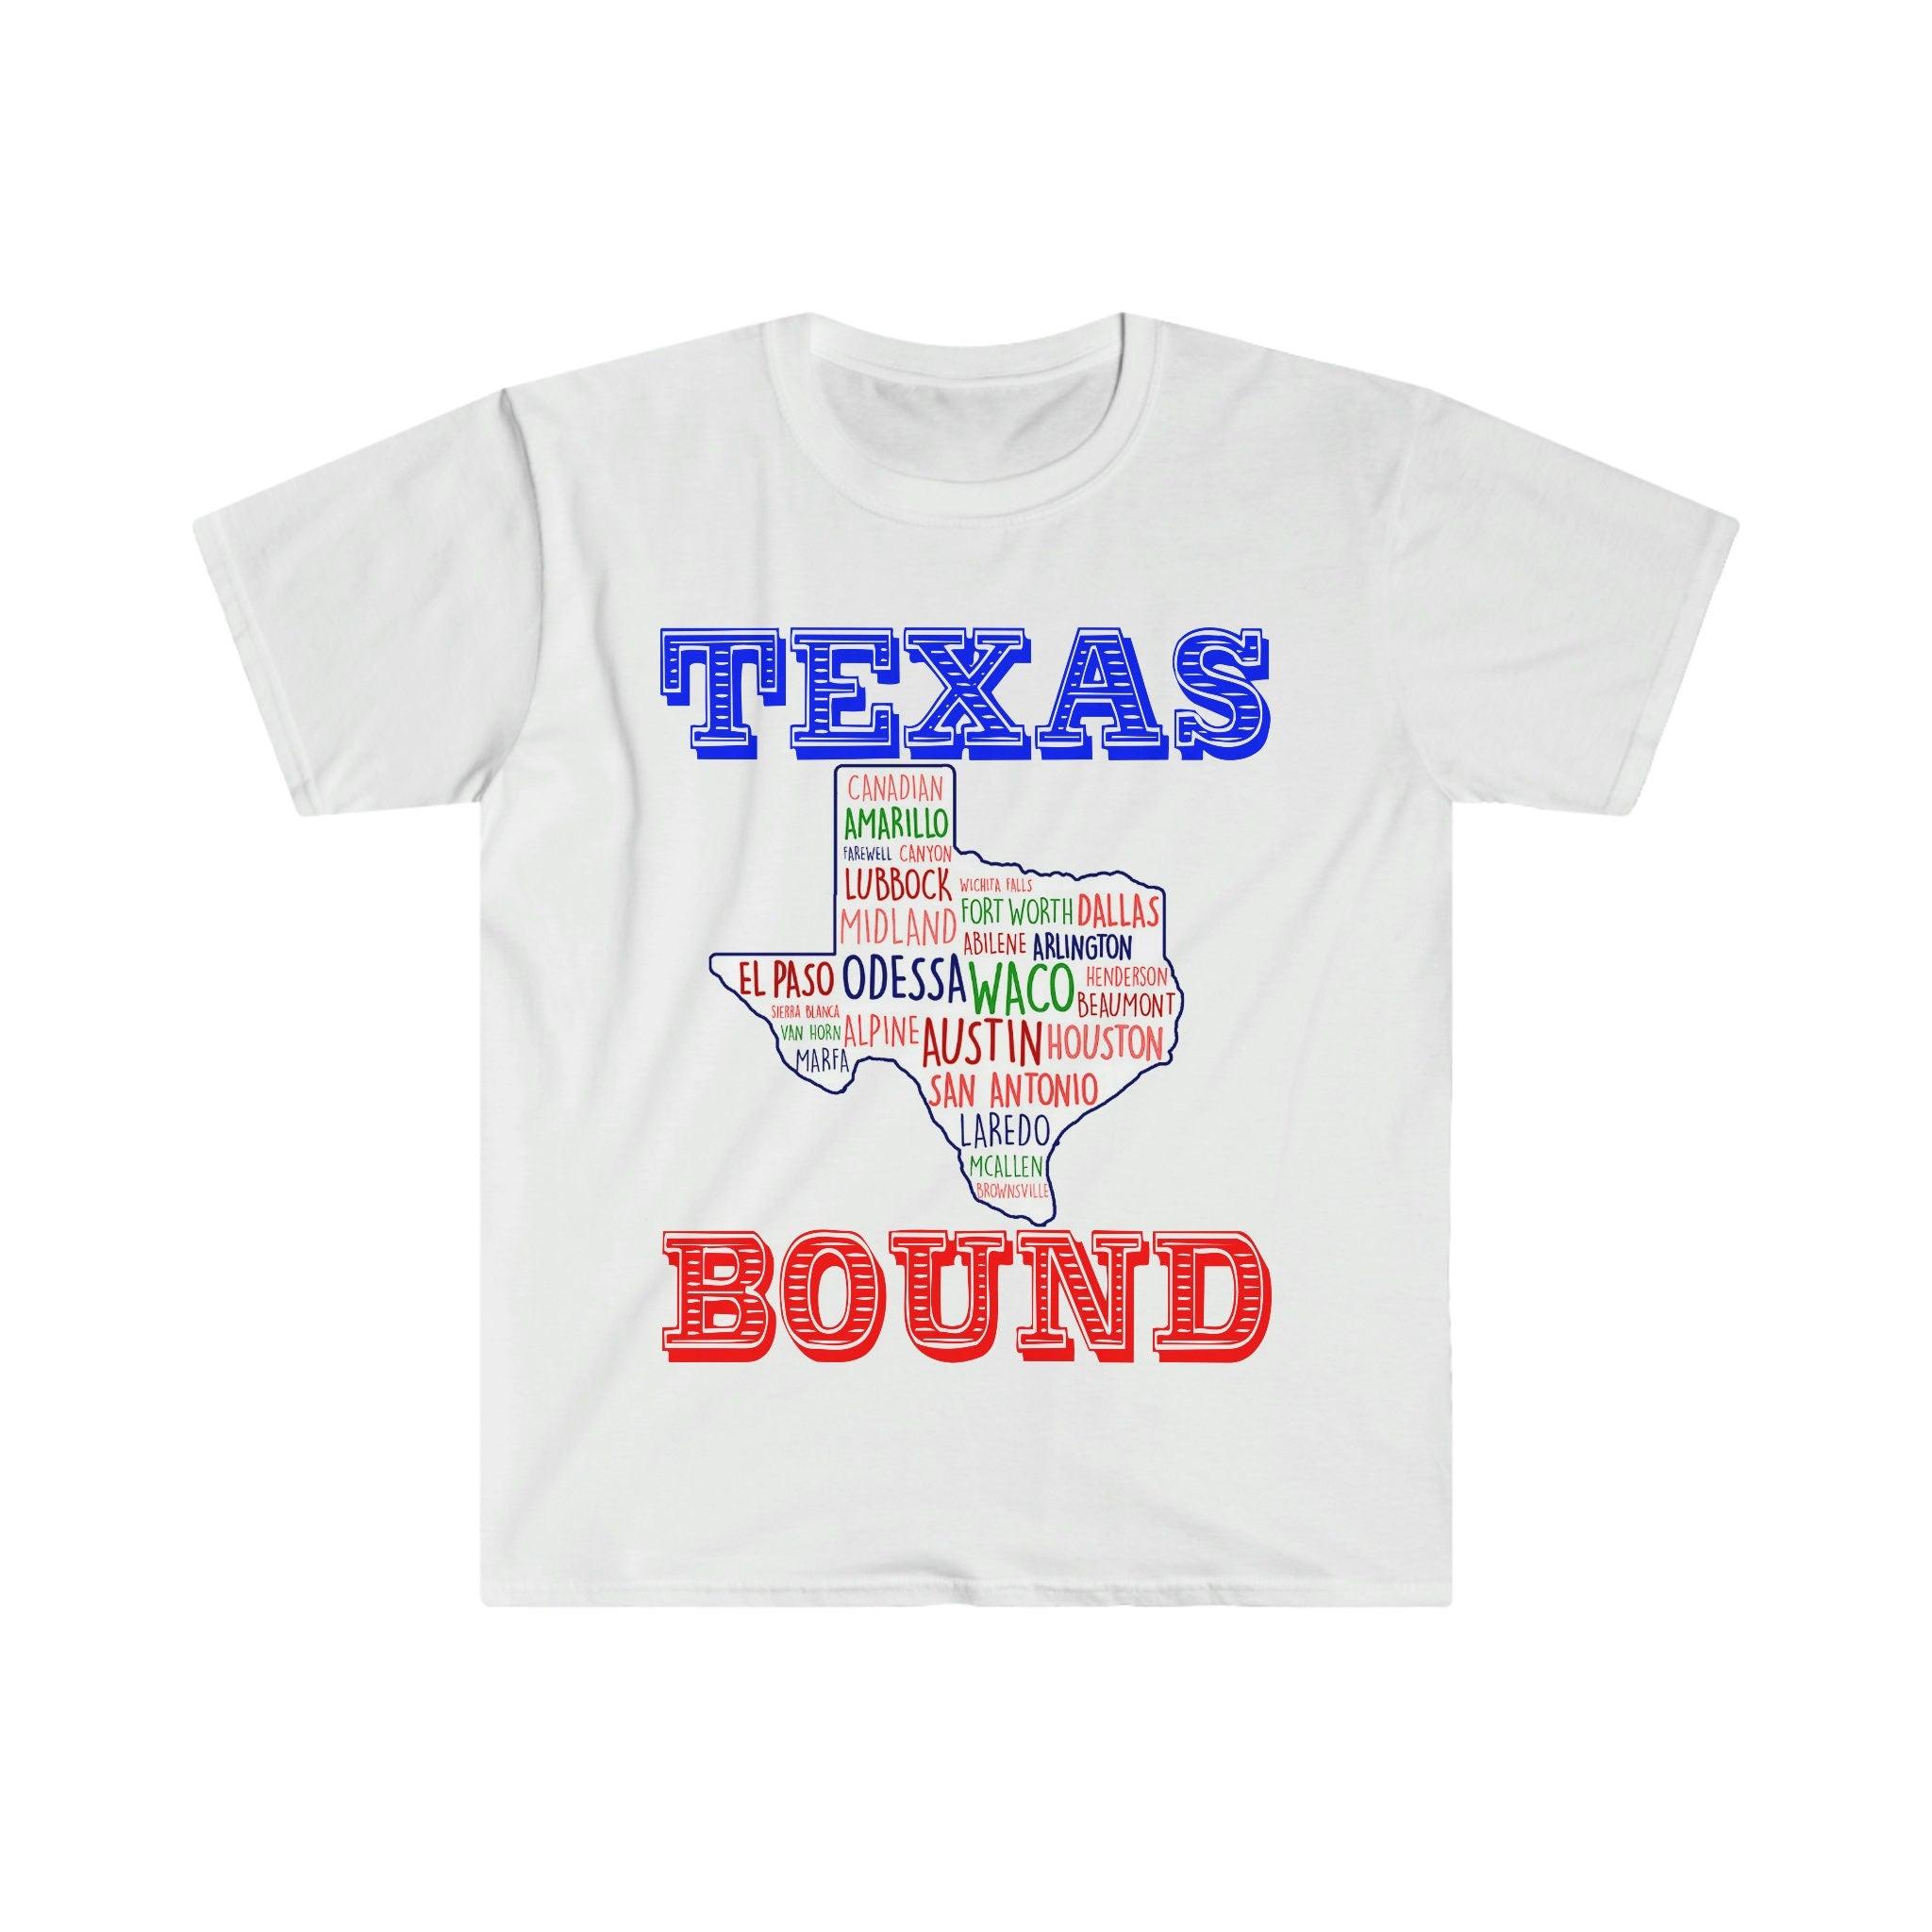 Texas vázaný | Trička Texas Places |Texas Map Trička, Stěhování do Austinu , Vítejte v Texas Gift, Texas Bound, Novinka v Texasu, Stěhování do DFW Porazit zvýšení daní pro Bidena, Bidenův daňový plán, pobřežní liberál, Houston, Stěhování do Austinu, Stěhování do DFW, Stěhování do Texasu, Stěhování do Texasu Hrnek, Novinka v Texasu, Republikánská, Tričko, odpaliště, vázaná na Texas, texaská dívka, texaská republikánská v - plusminusco.com